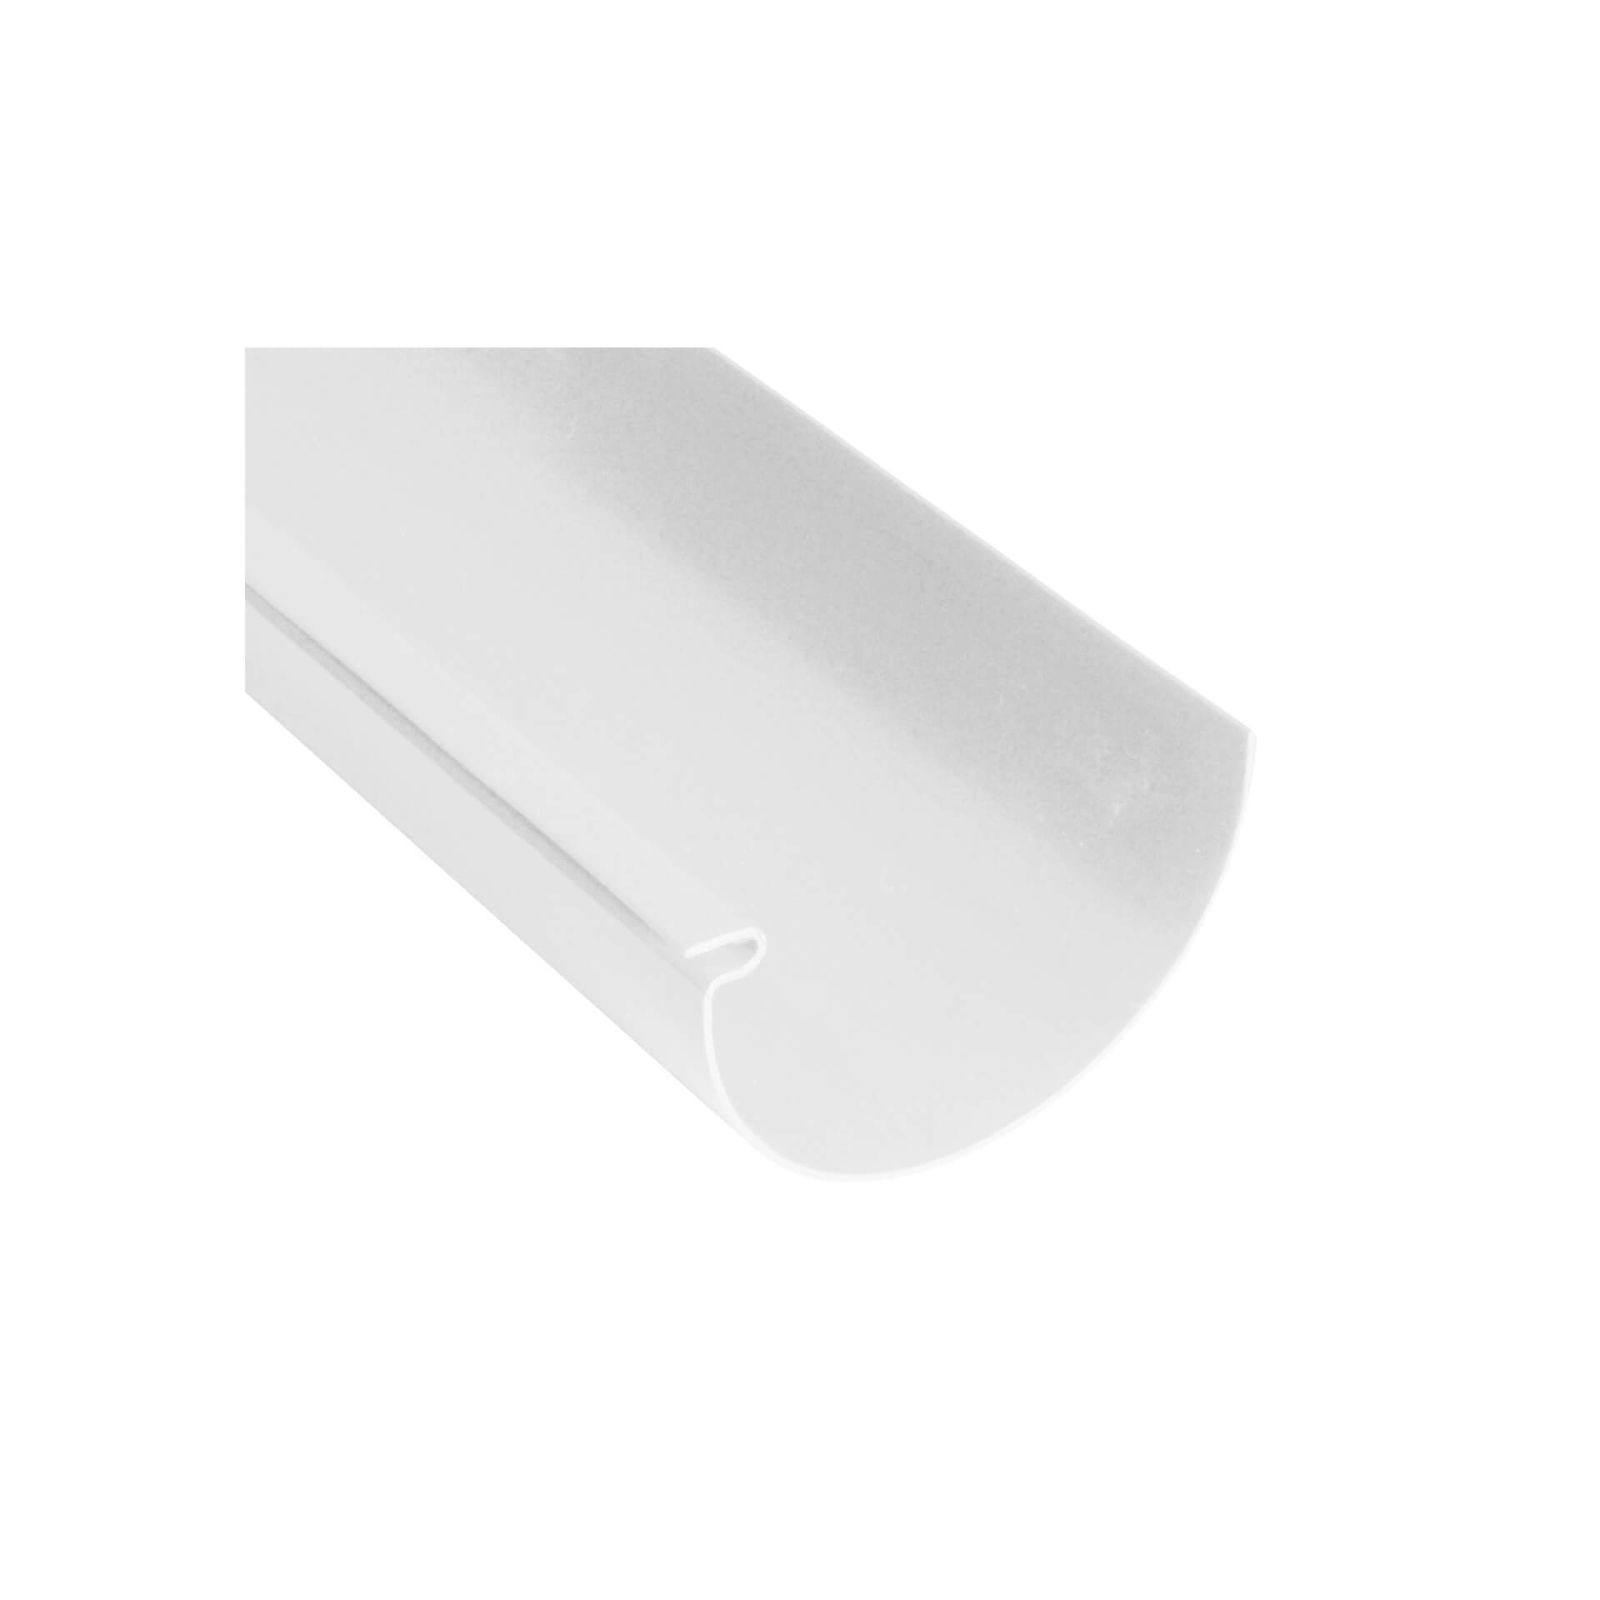 Kunststoff Dachrinnen Sparpaket 6 m | Ø 100/75 mm | Farbe Weiß